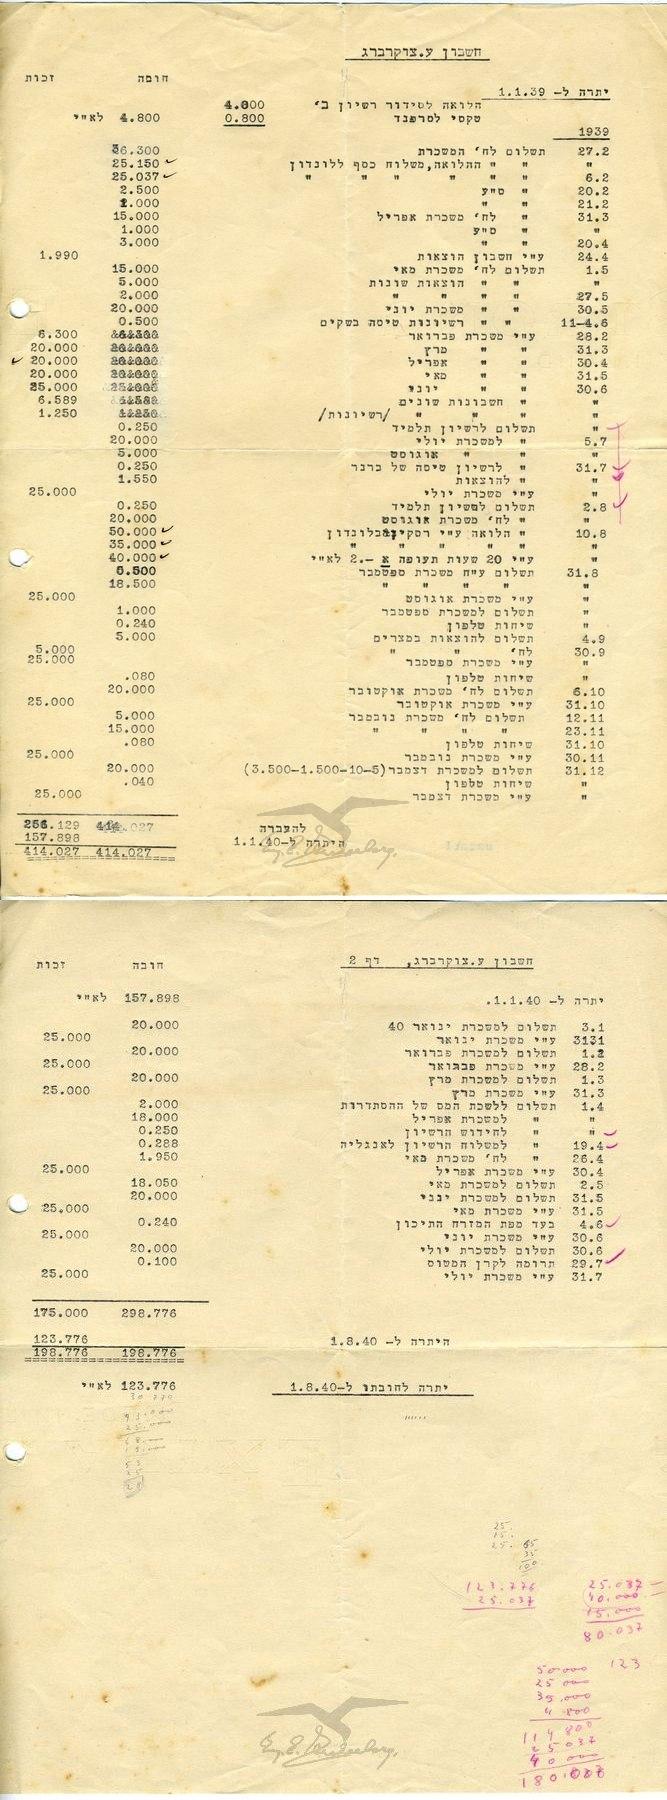 דוח הכנסות והוצאות של עמנואל צוקרברג לשנים 1939 – 1940 בחברת אוירון